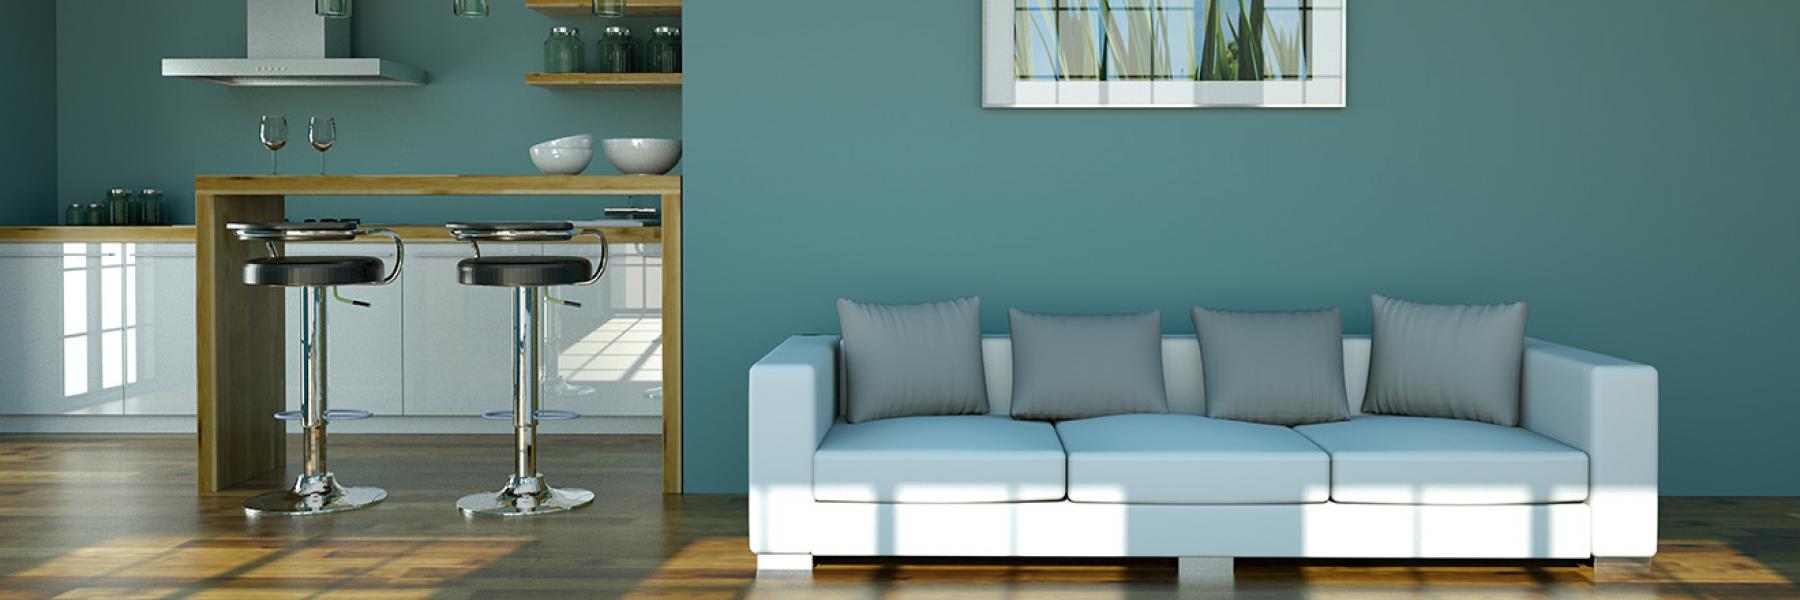 4 ألوان عصرية لطلاء الجدران ستعزير الإيجابية داخل مسكنك.. شاهد